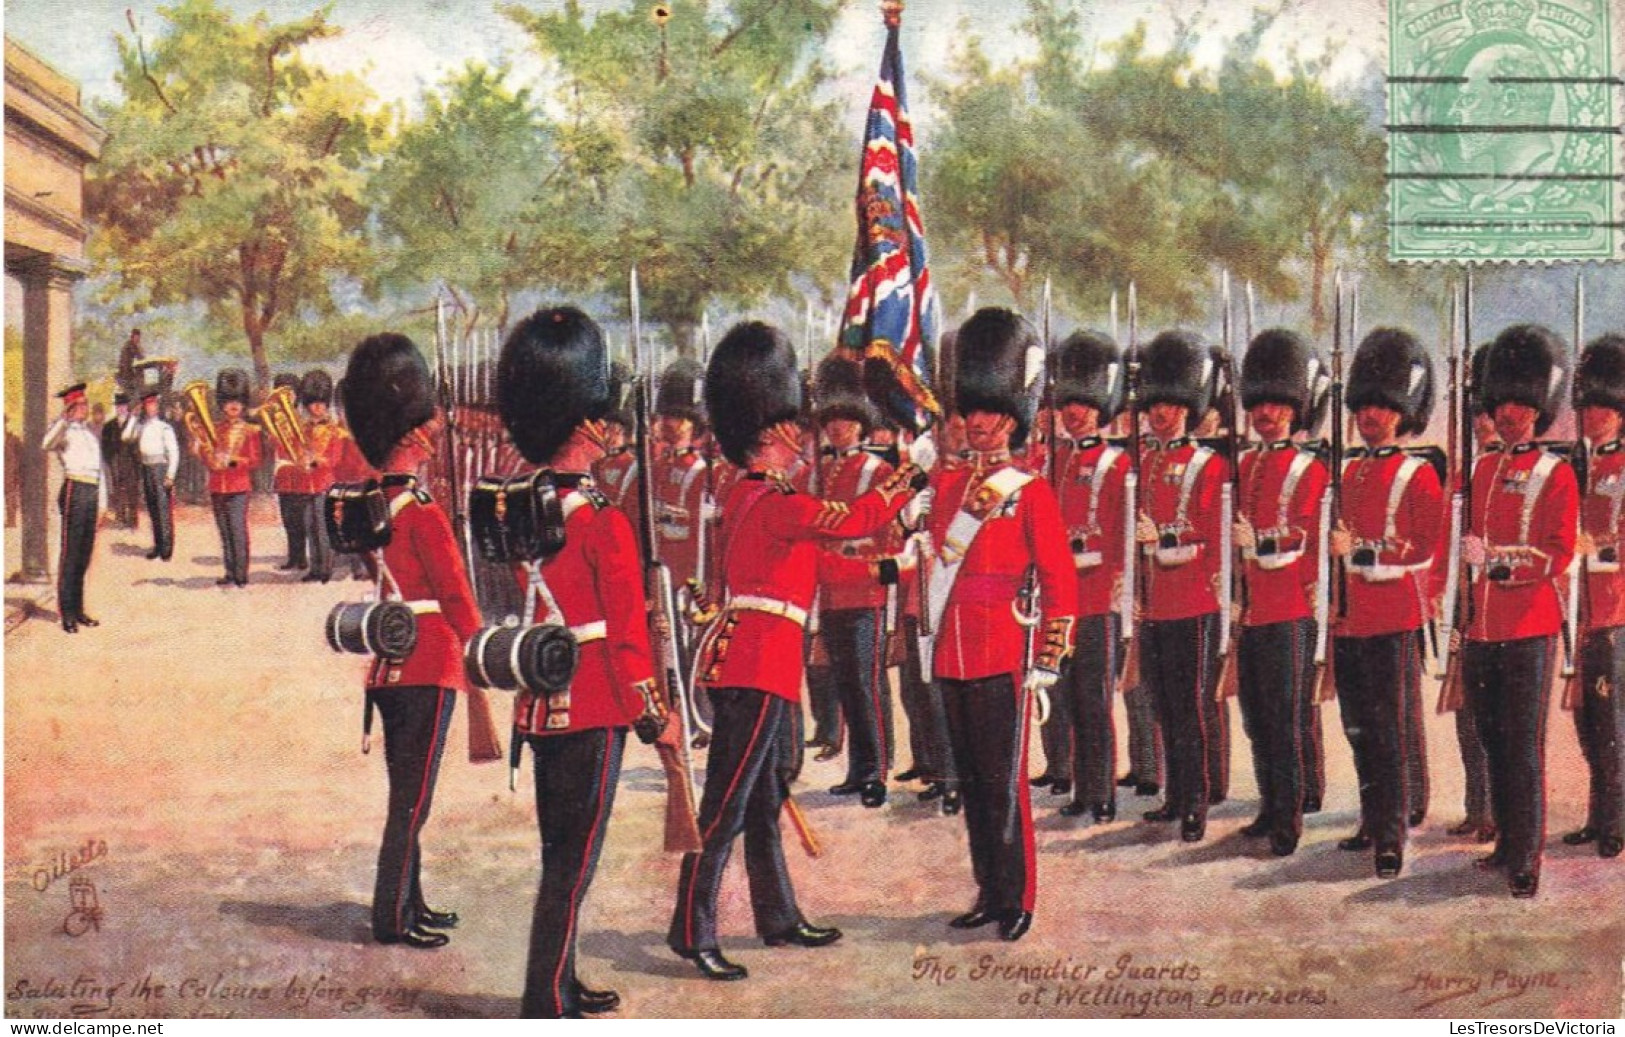 ARTS - Peintures Et Tableaux - The Grenadier Guards Of Wellington Barraens - Harry Payne - Carte Postale Ancienne - Paintings